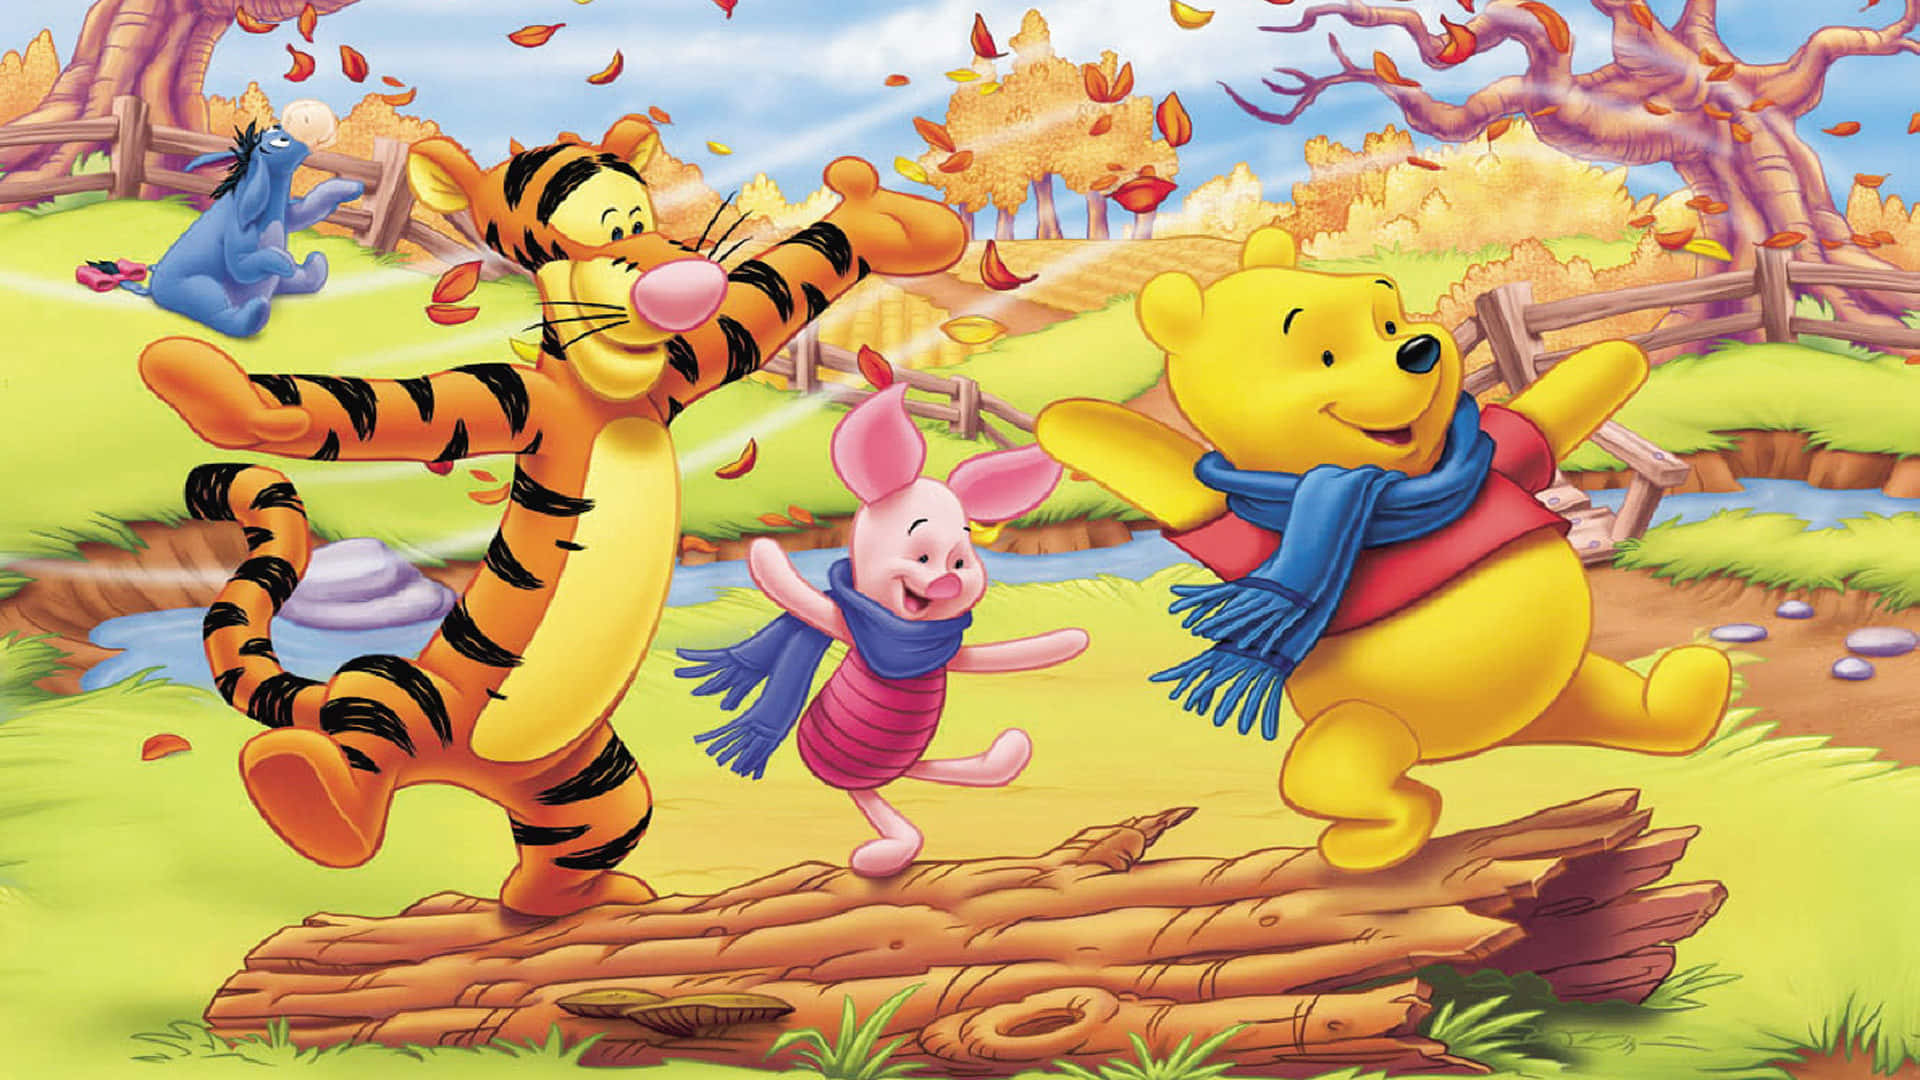 Bạn muốn tìm một hình nền cho desktop của mình? Hãy chọn Winnie The Pooh! Những hình ảnh về Gấu Pooh đầy màu sắc như một món quà vui tươi và hạnh phúc cho thế giới kỳ diệu của bạn!